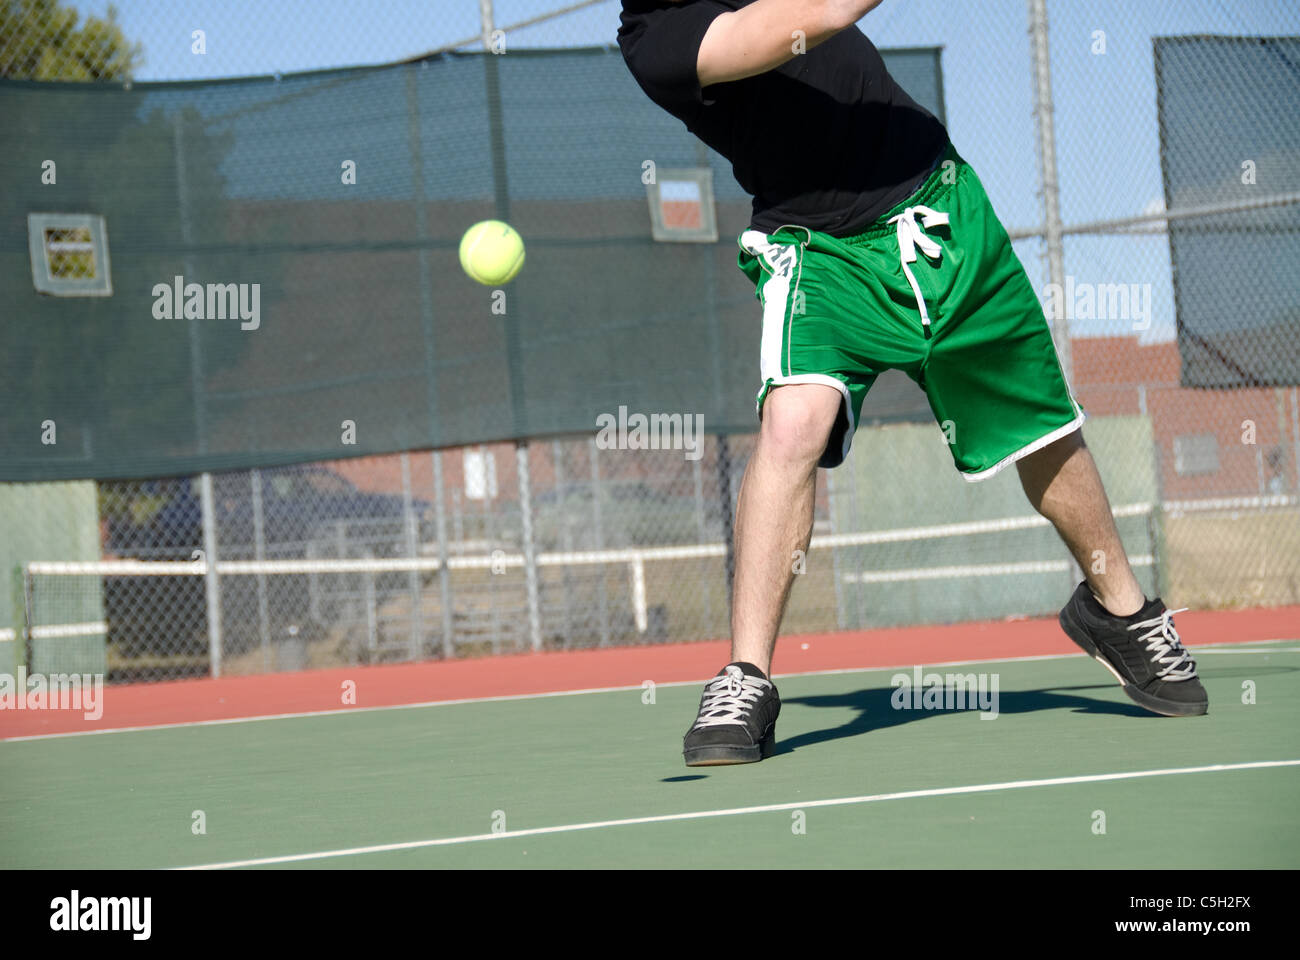 Une image illustrant le concept de tennis, y compris la cour, raquettes, balles et bleu à l'extérieur. Banque D'Images